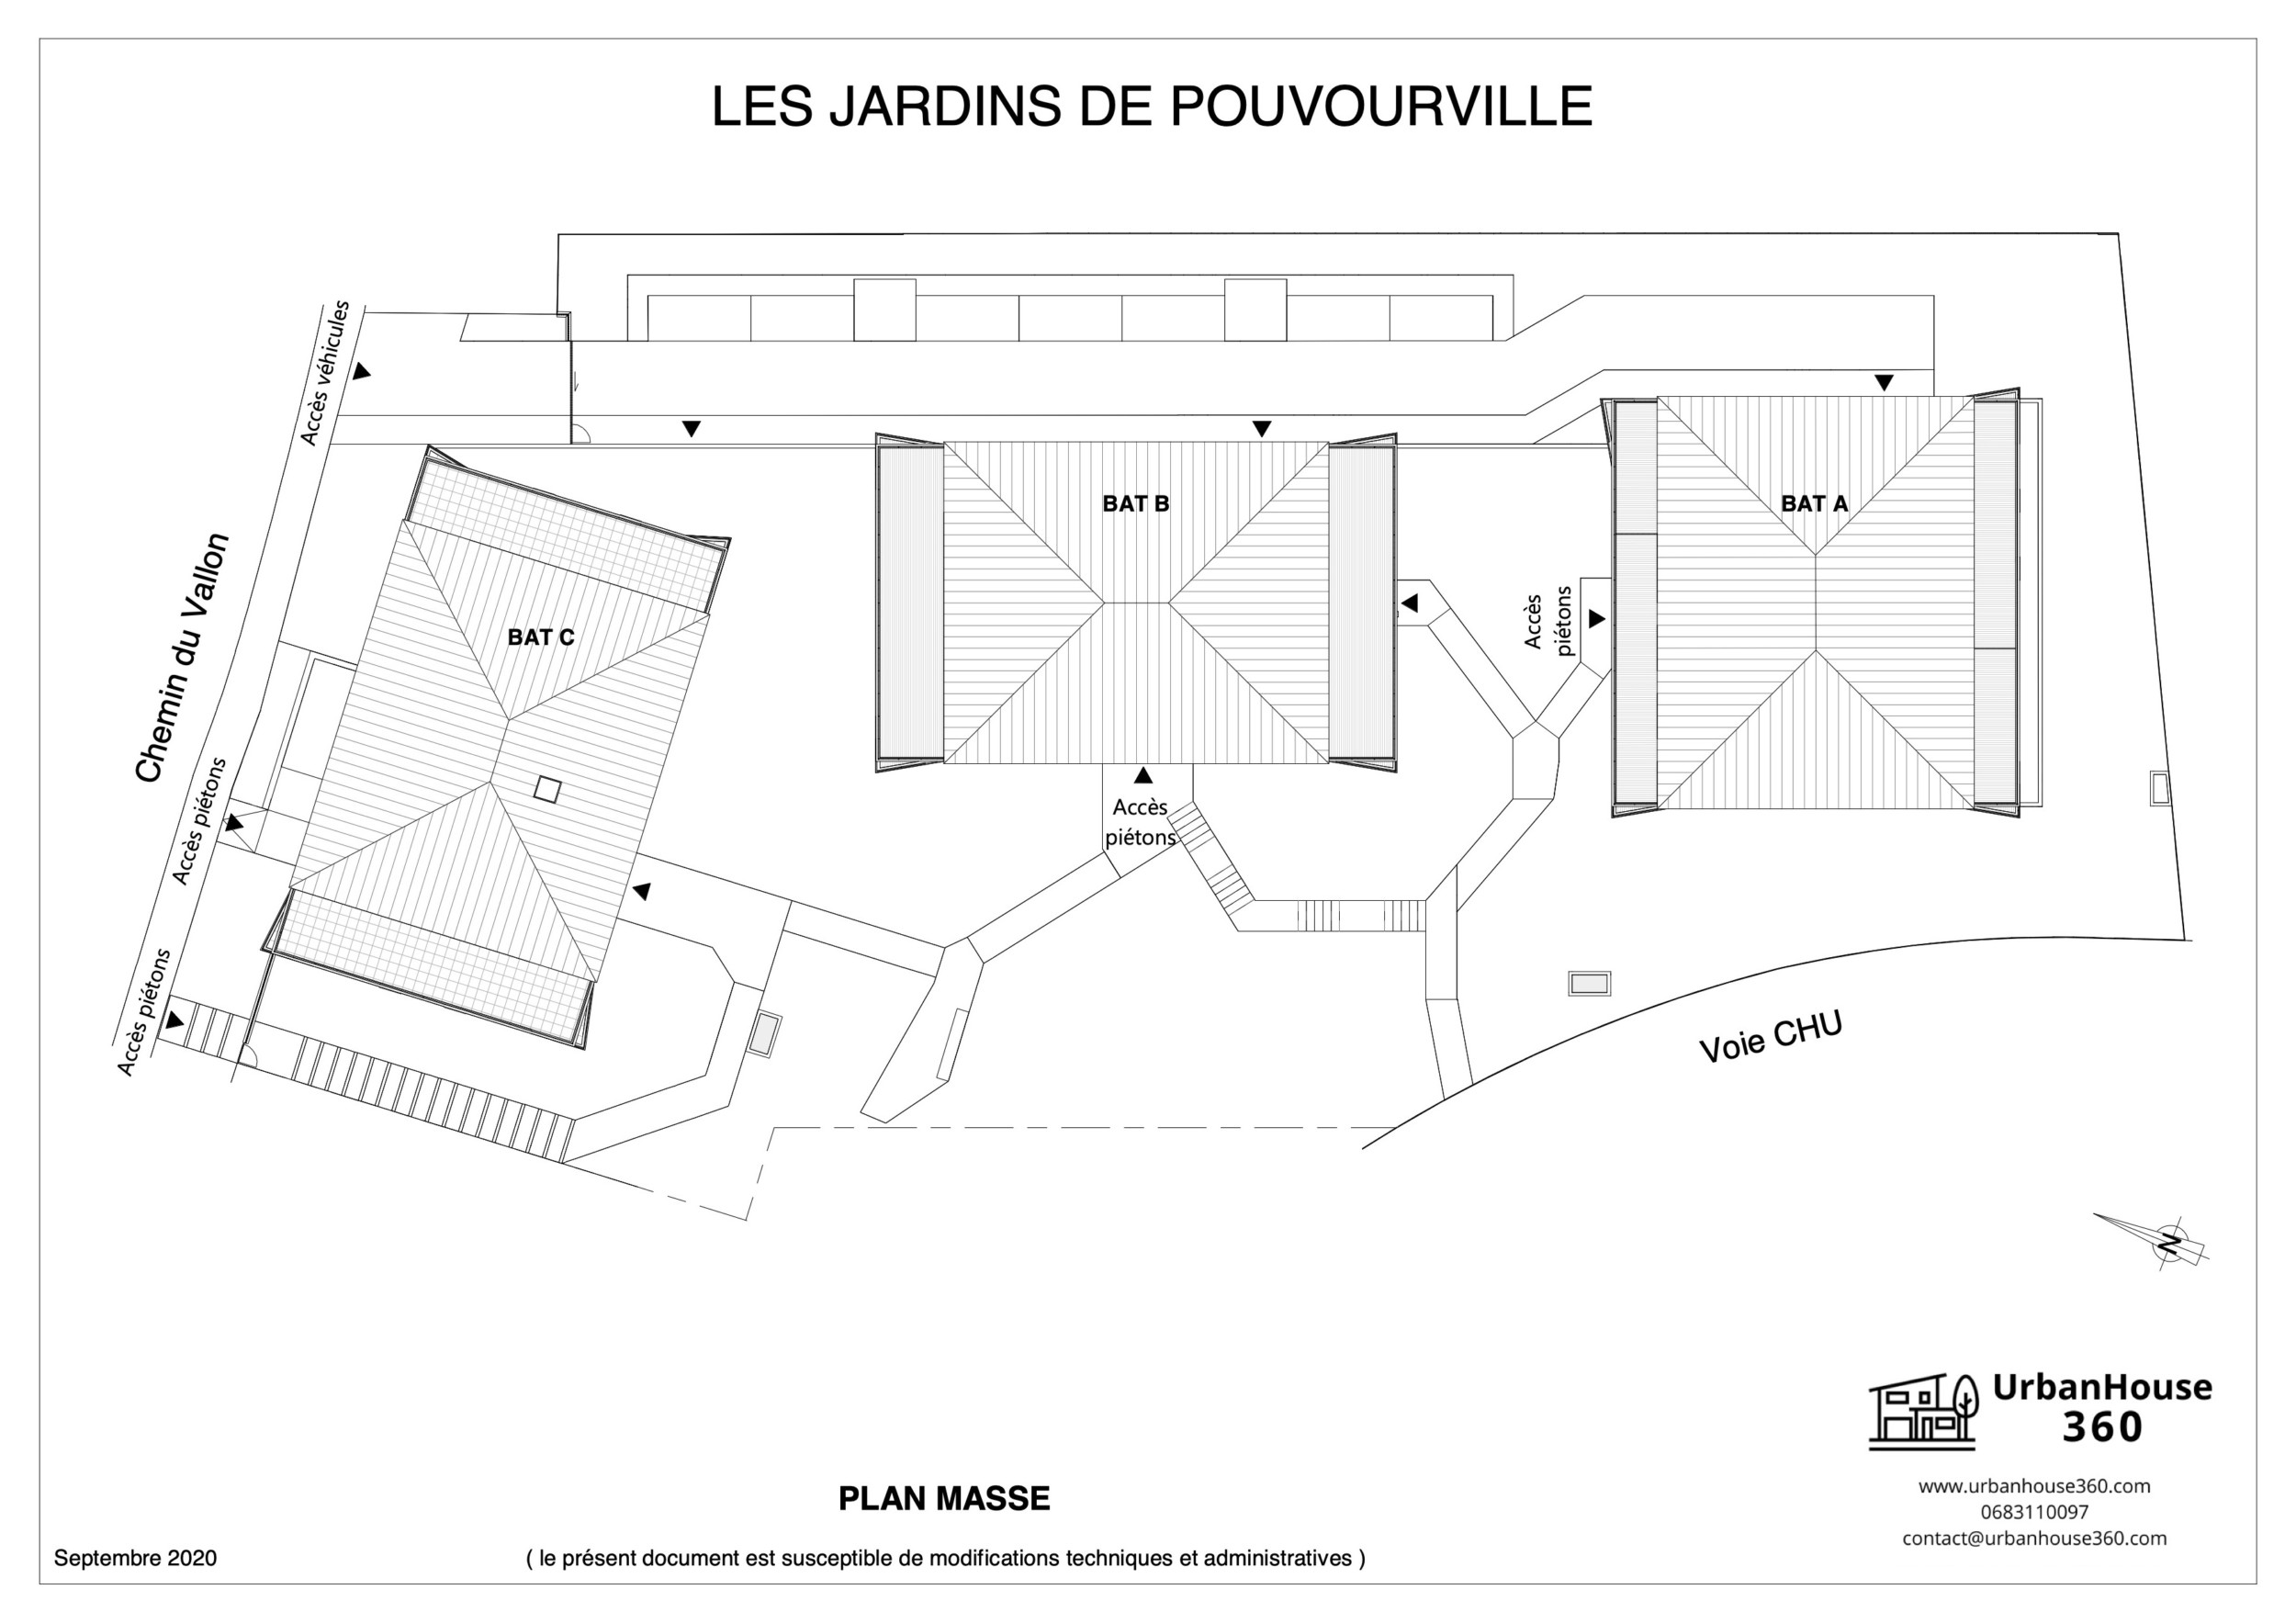 UrbanHouse360-plan_de_masse-les_jardins_pouvourville